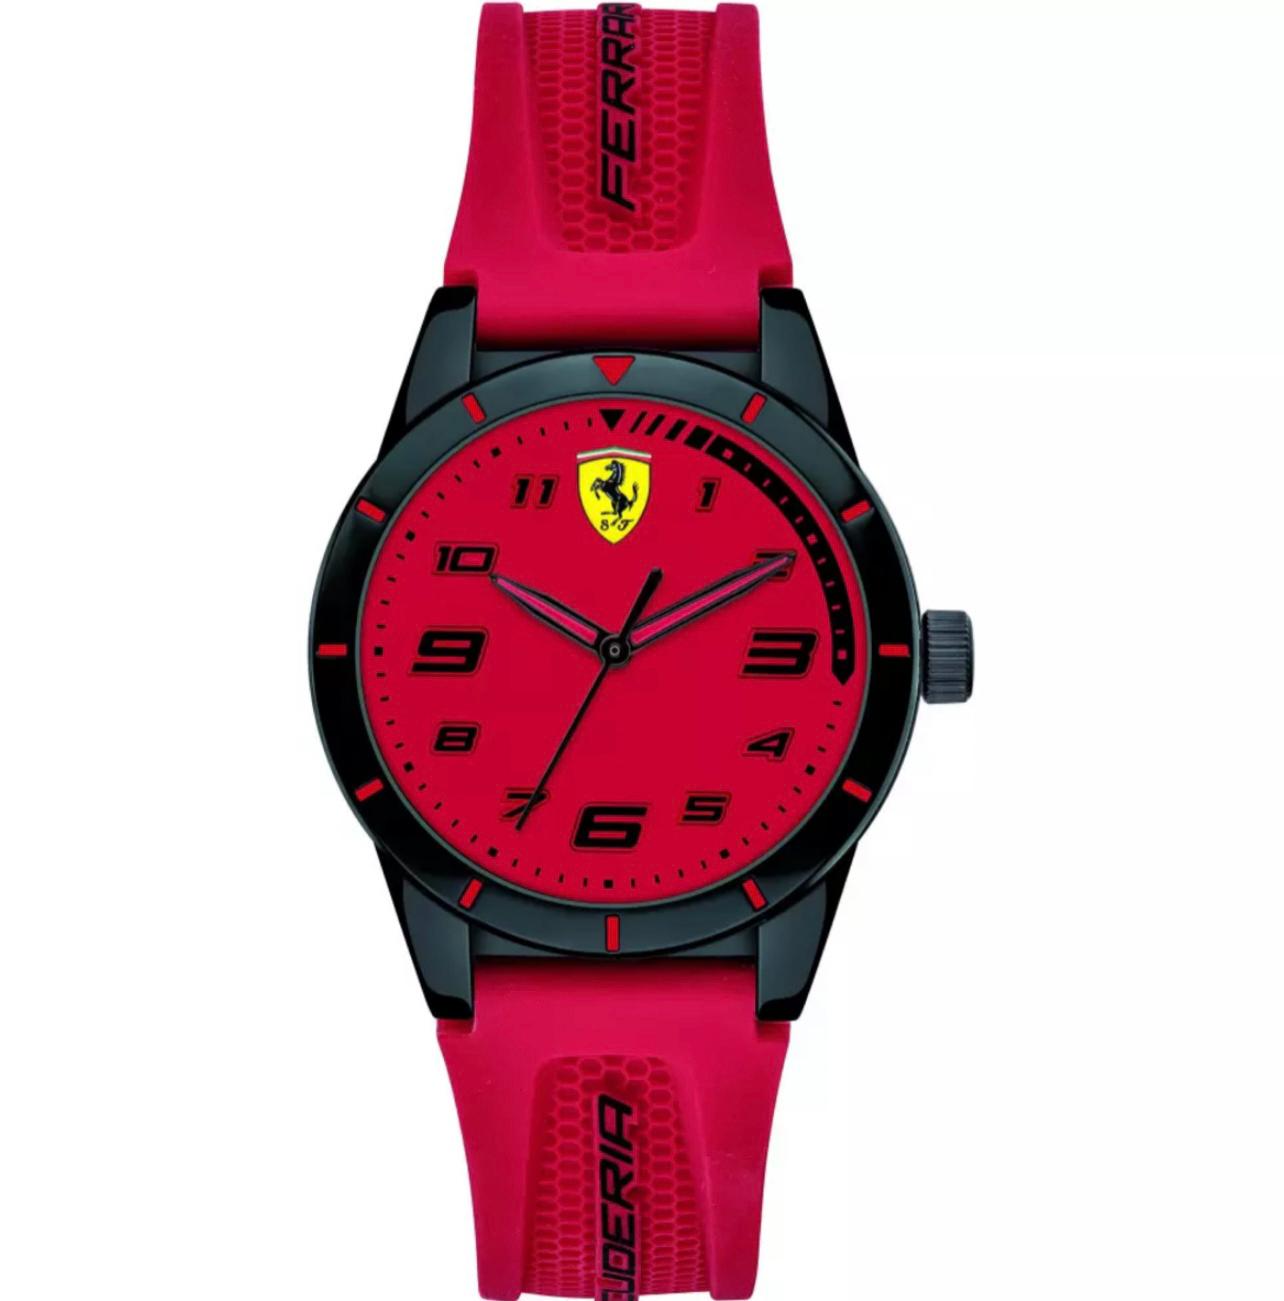 Orologio Ferrari Redrev - Gioielleri Iarlori